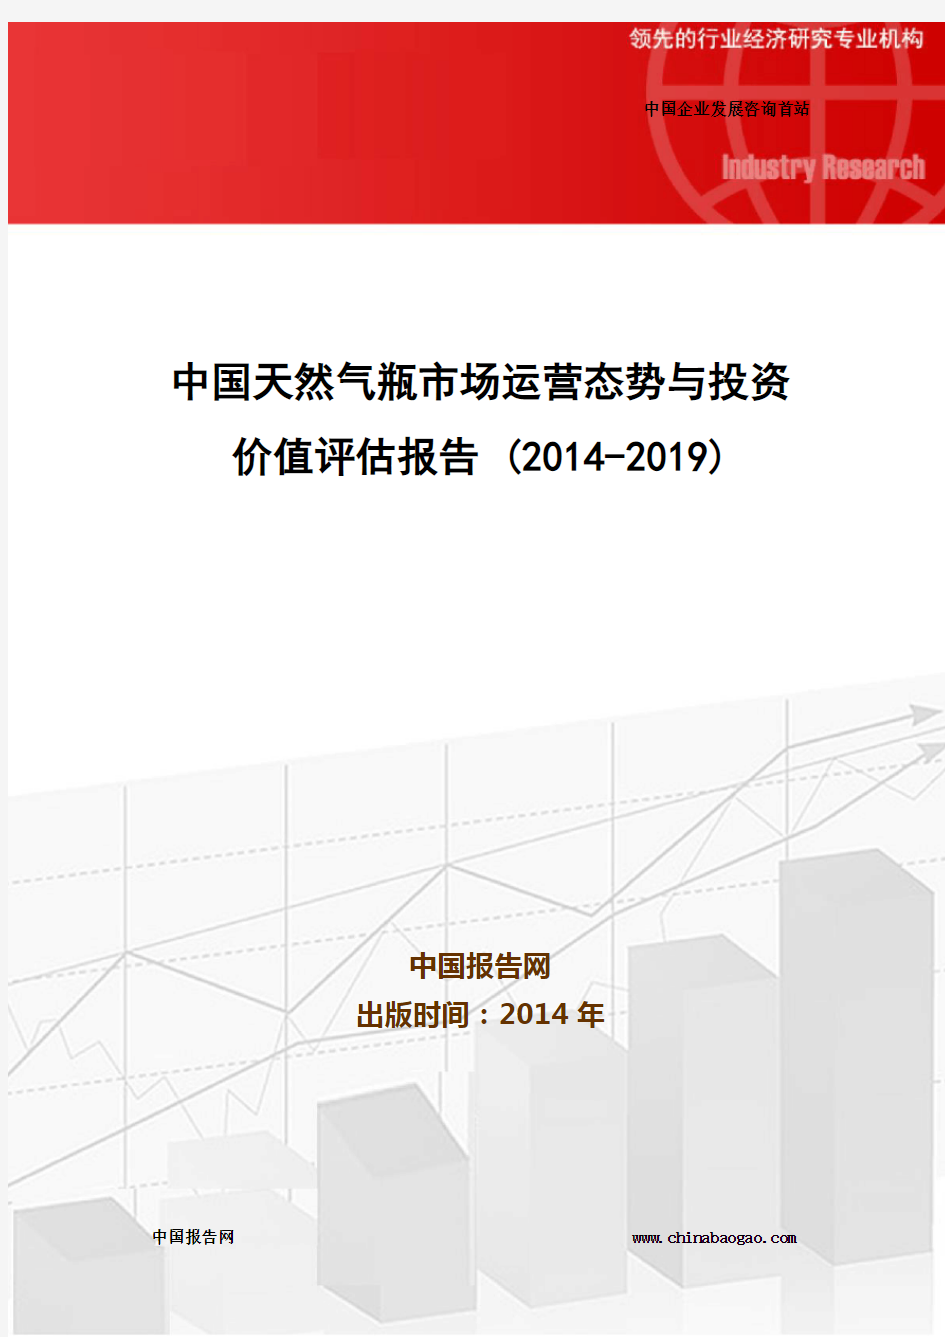 中国天然气瓶市场运营态势与投资价值评估报告 (2014-2019)